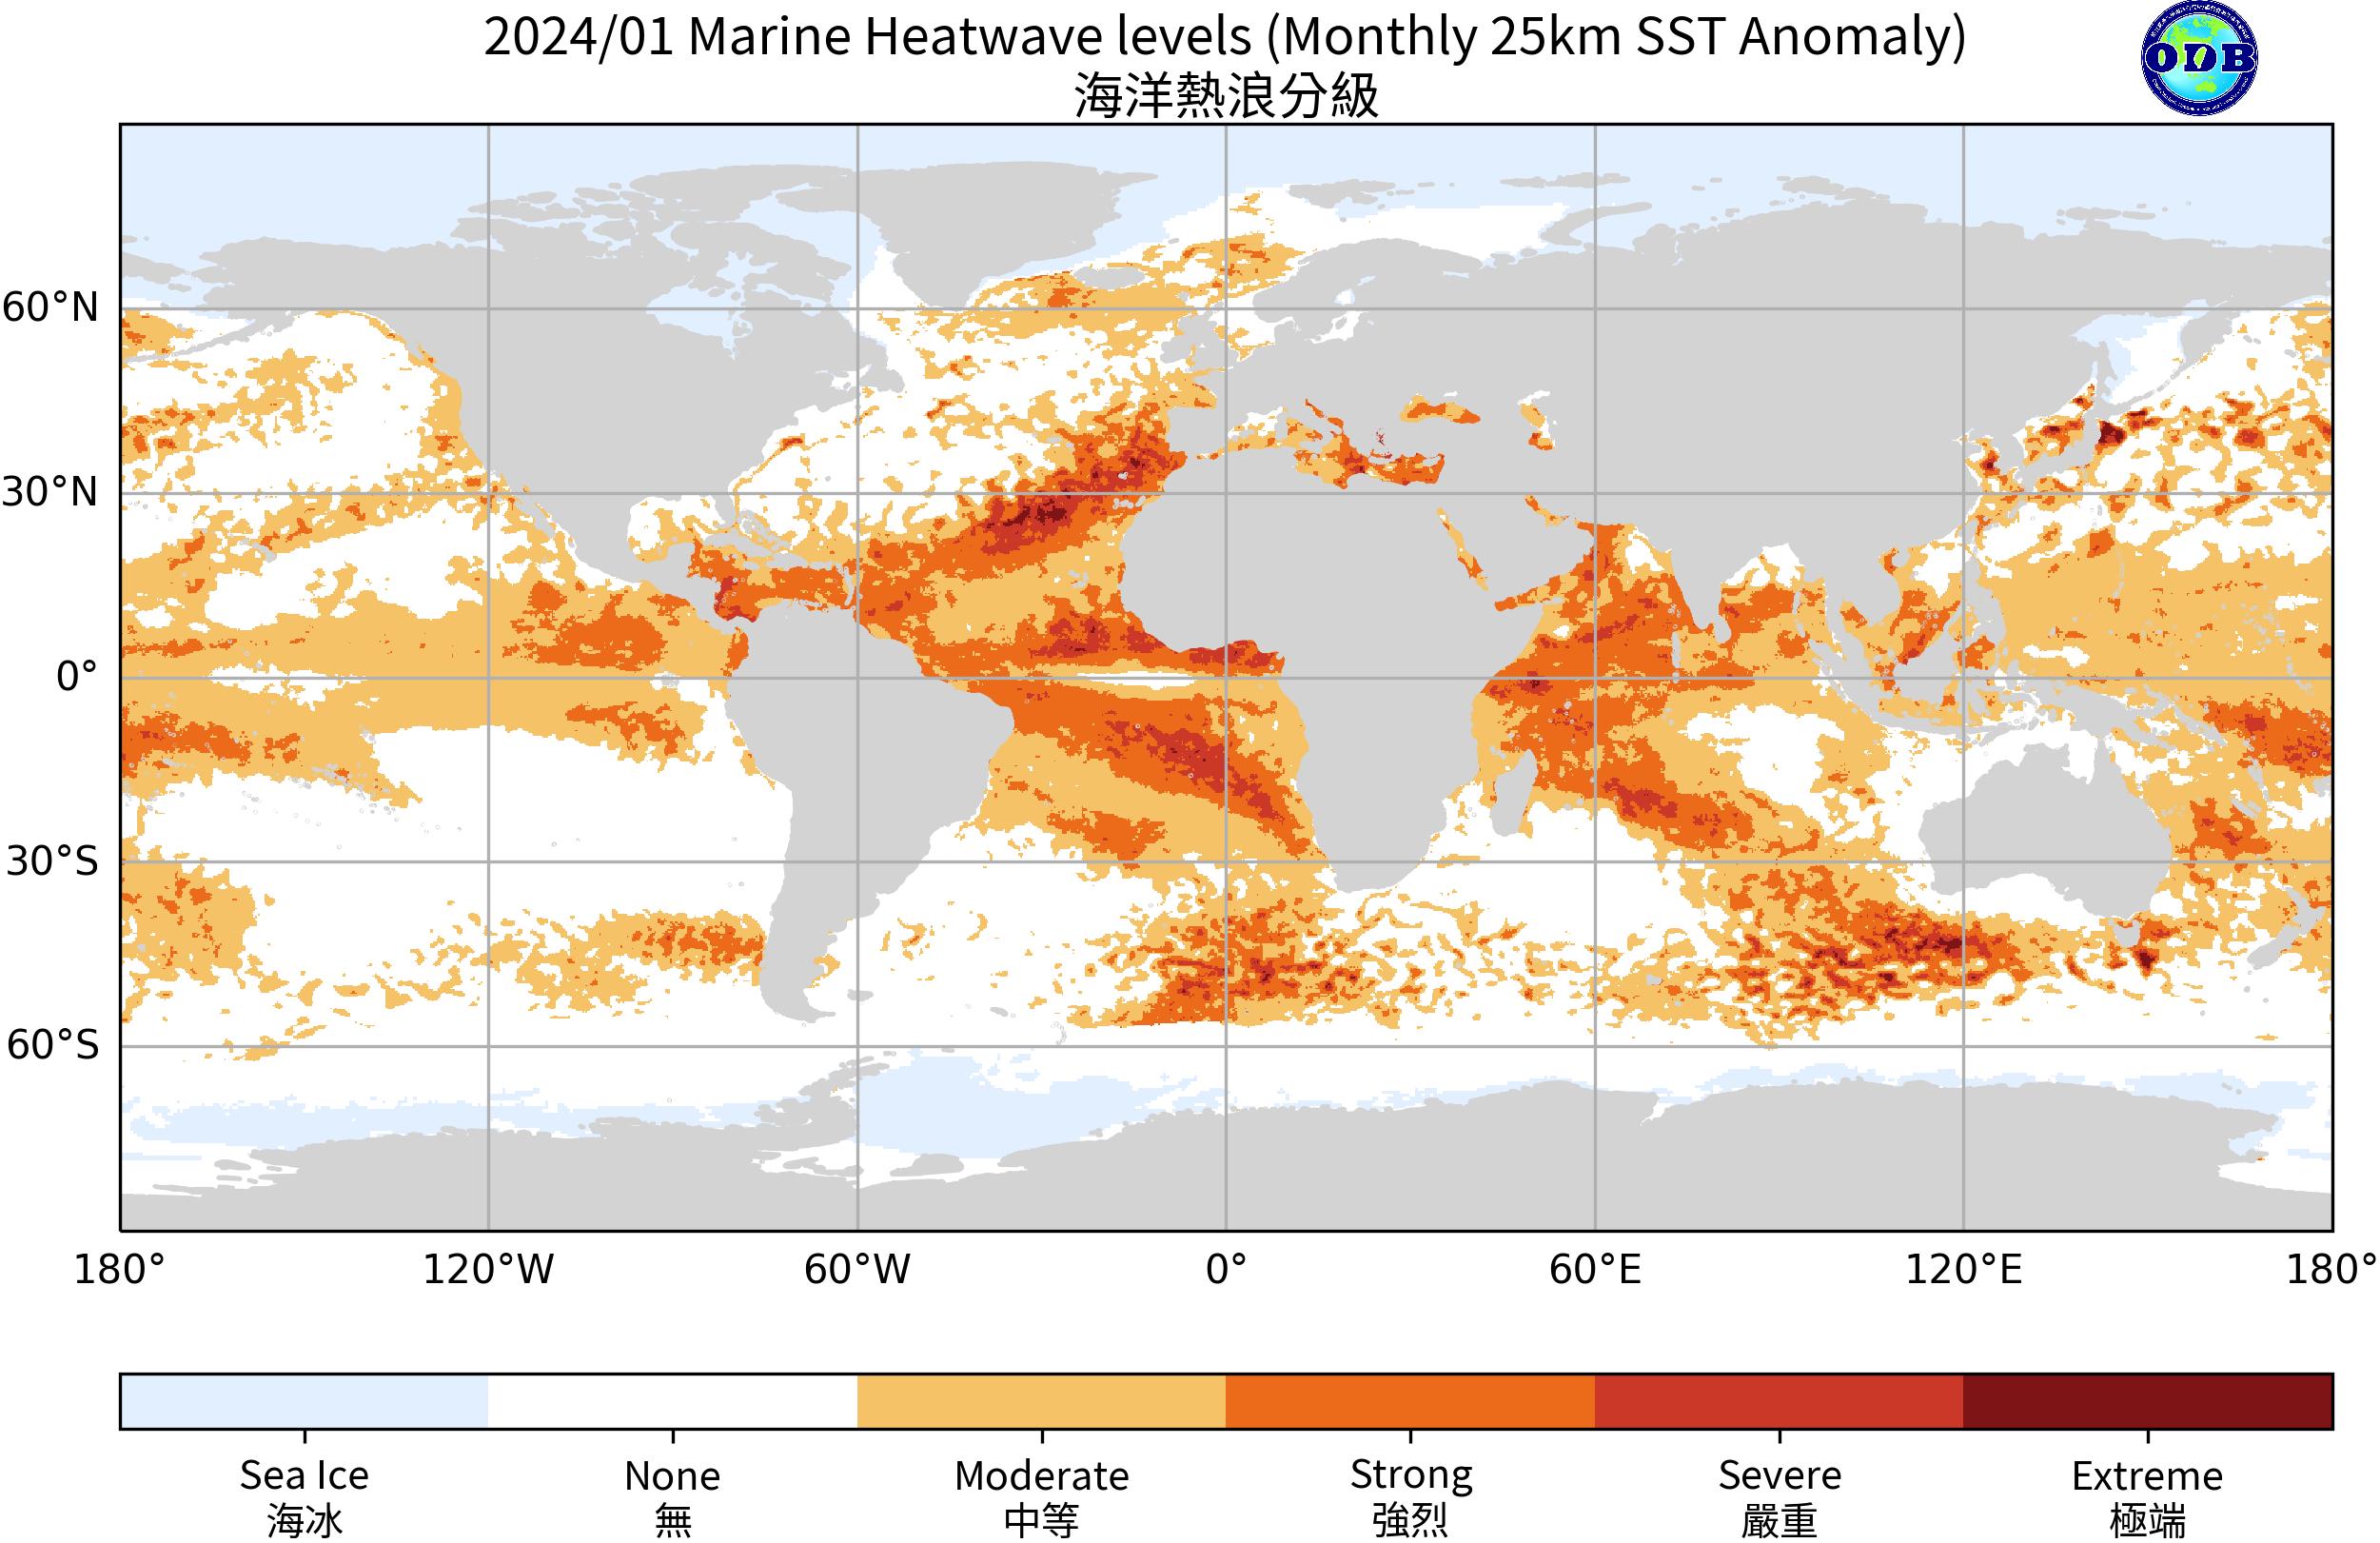 Marine Heatwaves level 202401